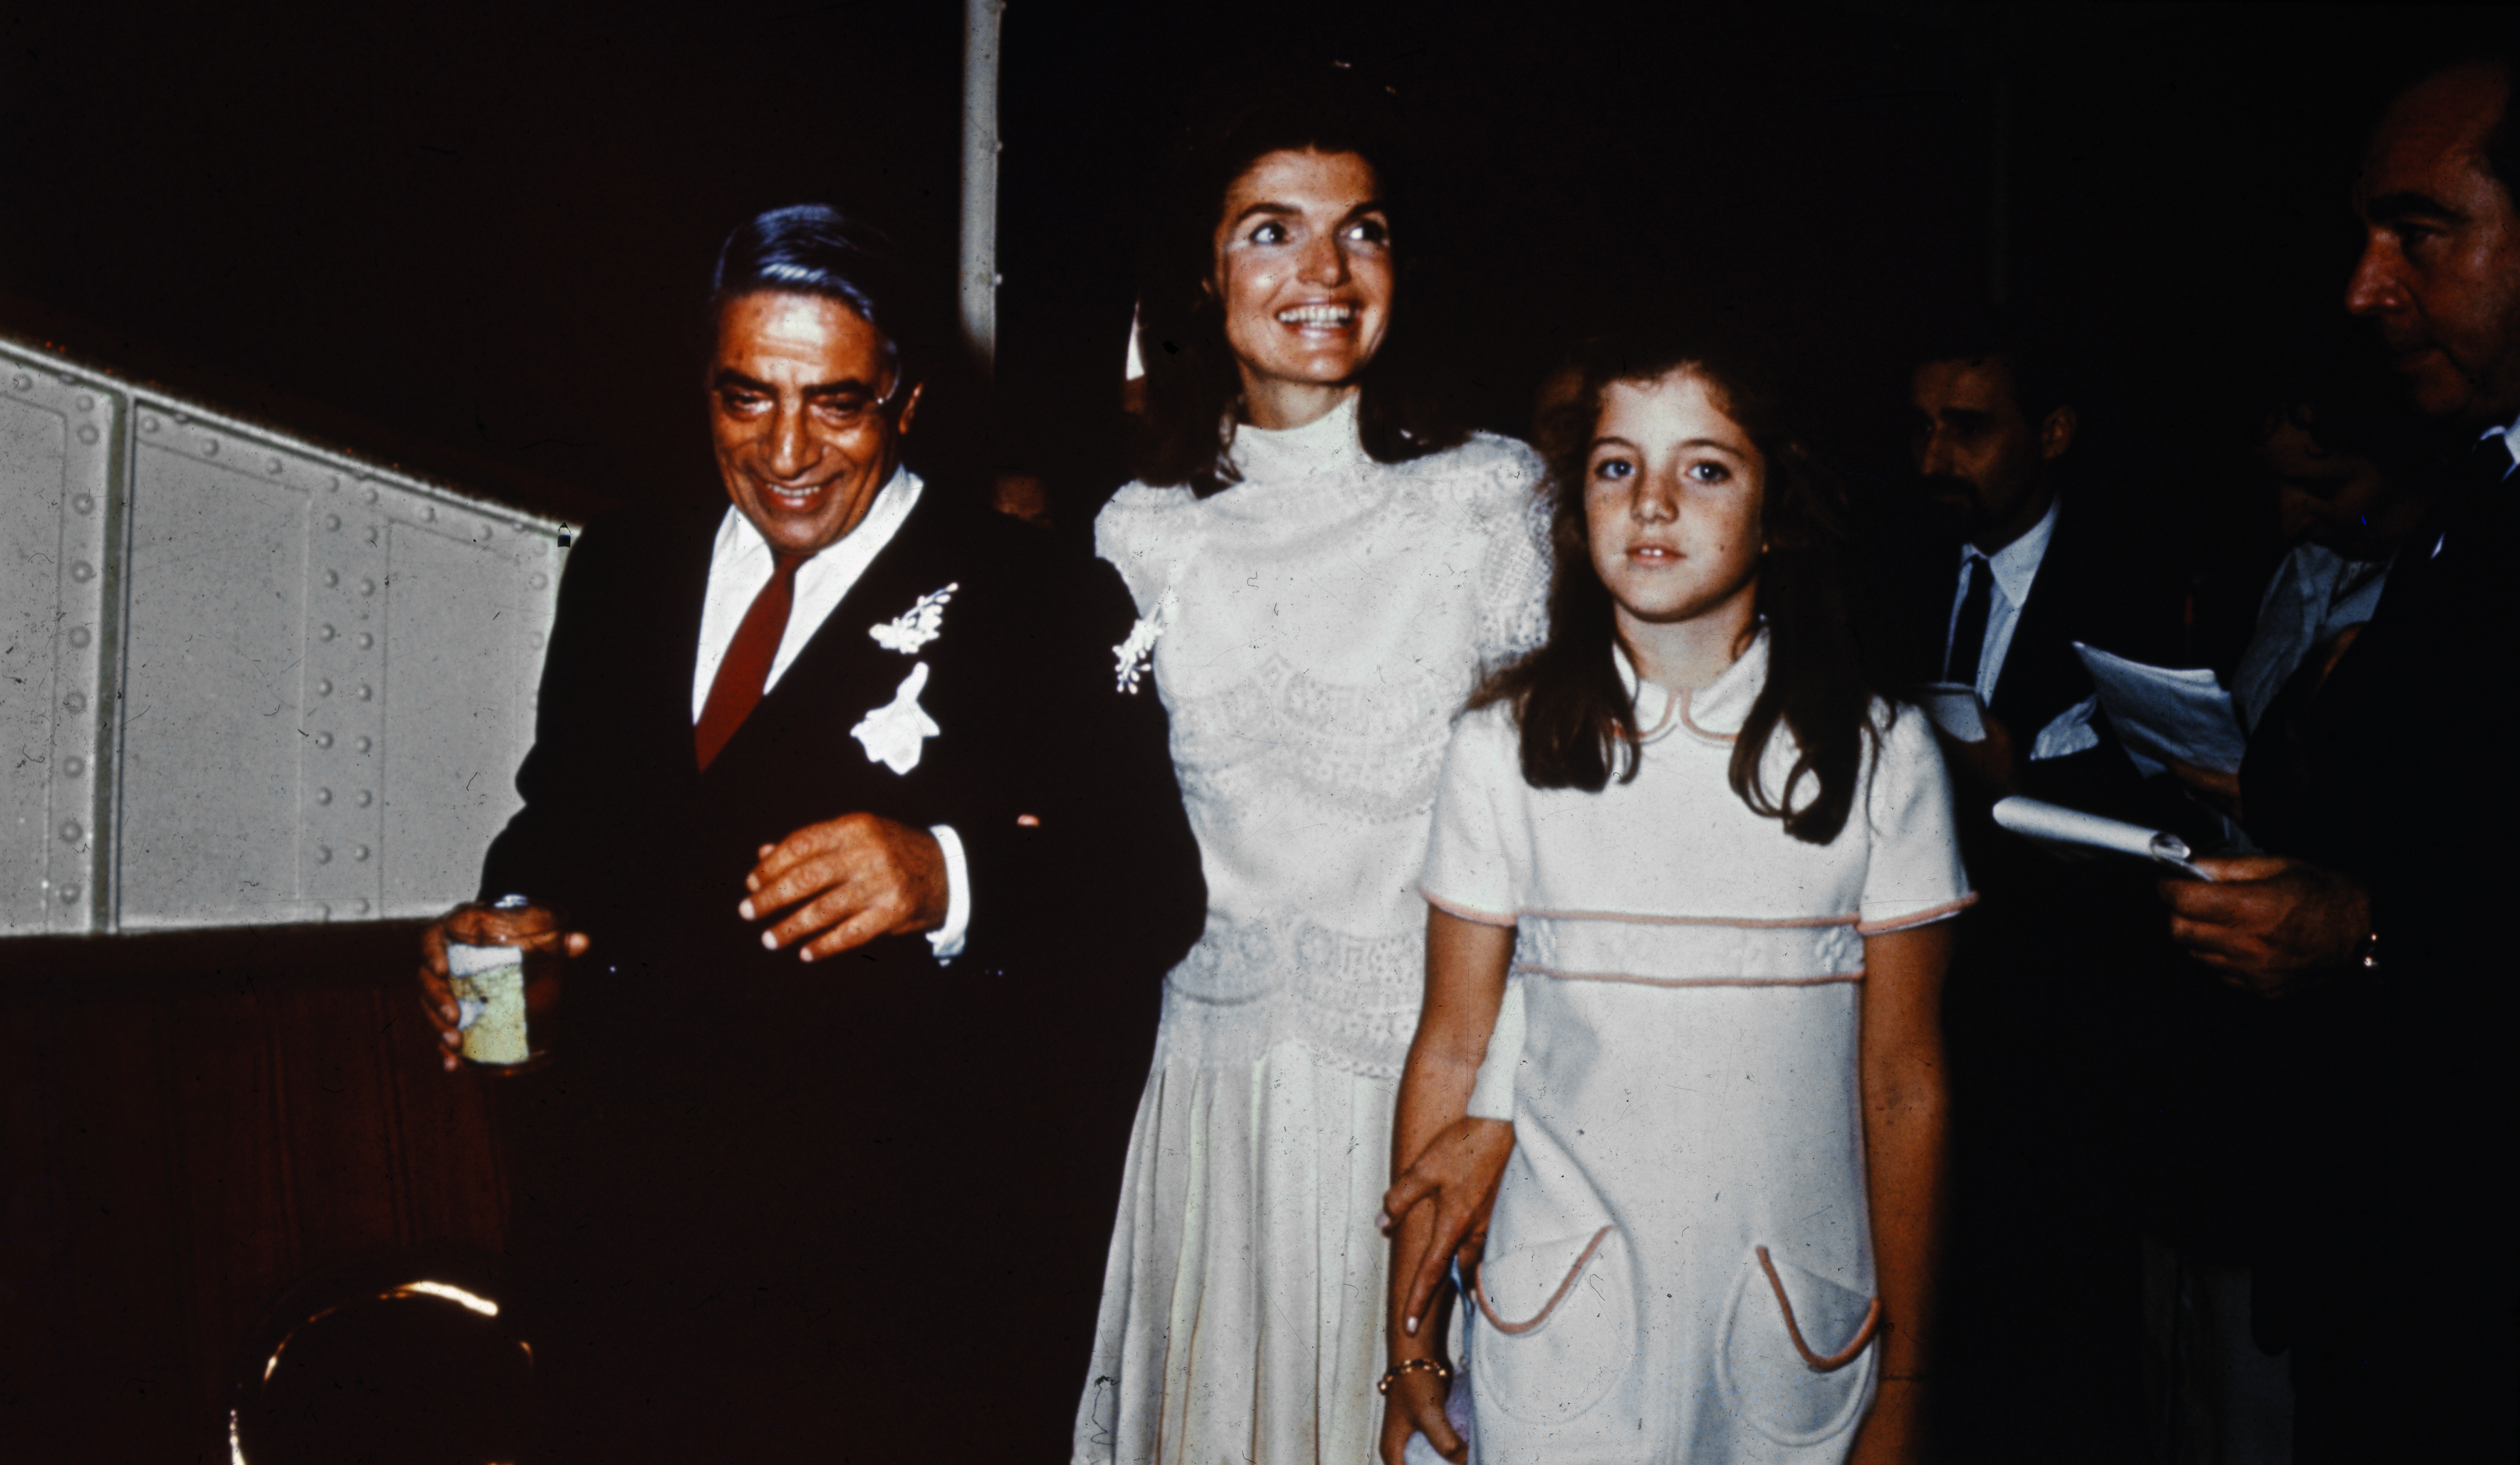 Jacqueline Kennedy Onassis és Aristotle Onassis az esküvőjükön, lánya, az akkor 10 éves Caroline Kennedy társaságában.